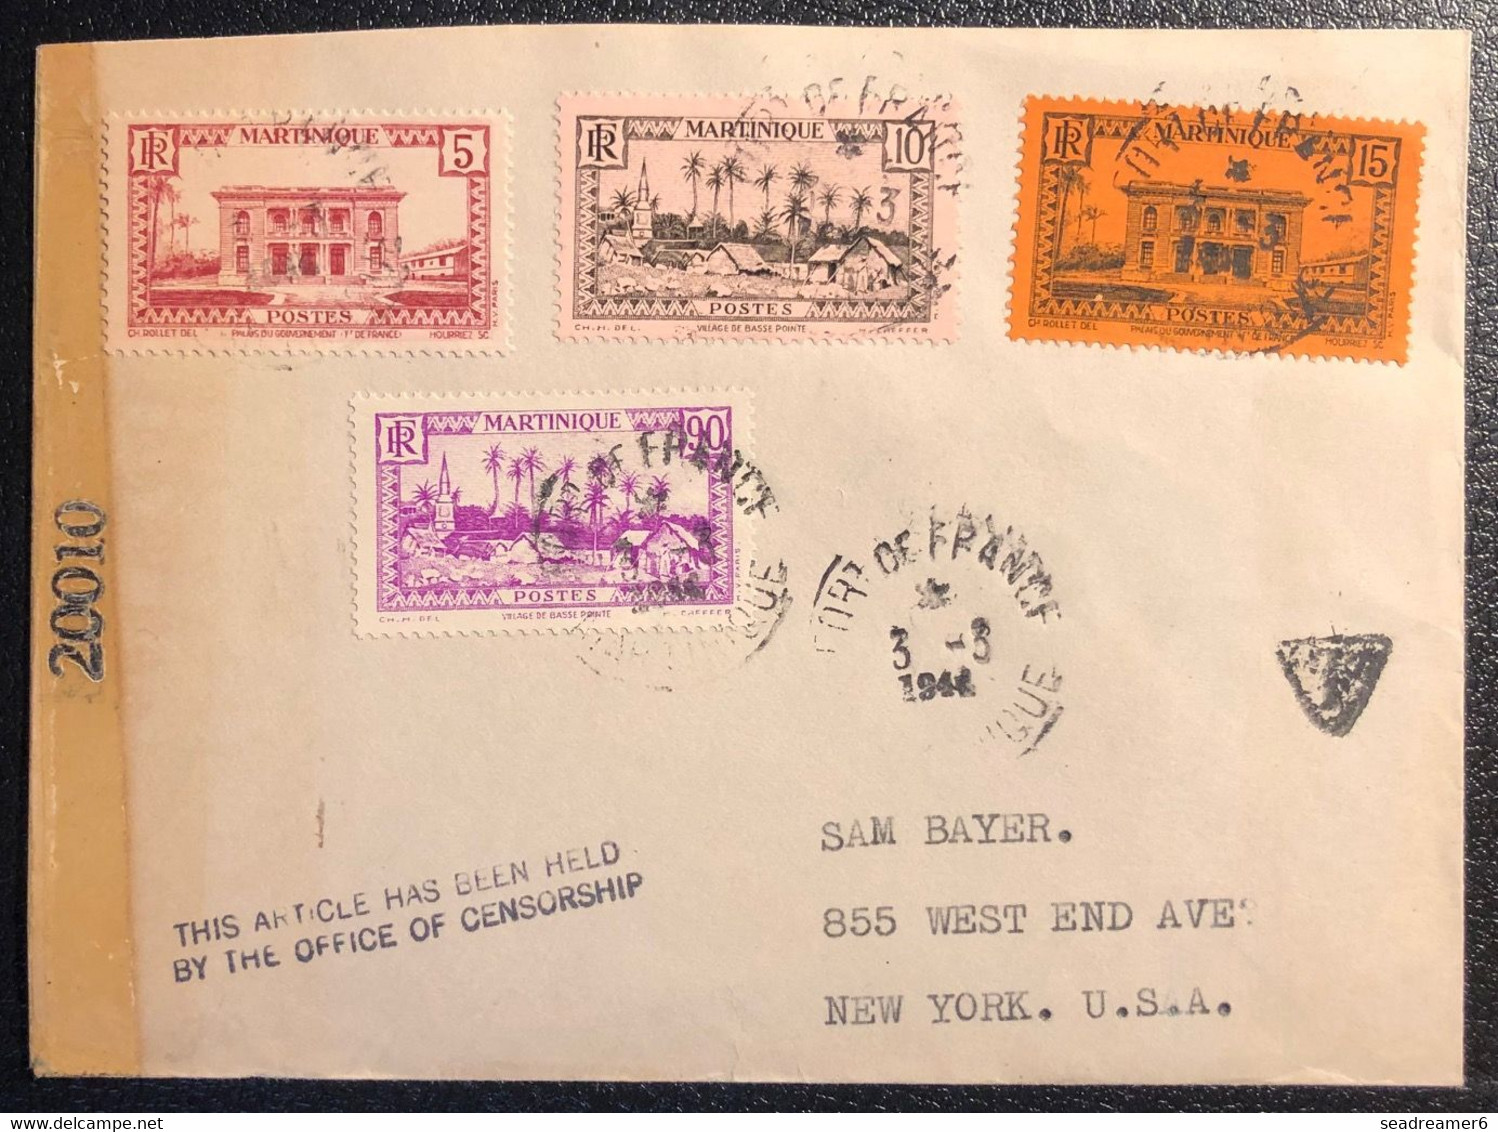 Martinique Lettre Tarif à 2FR25 1944 Obl Fort De France Violet Pour NEW YORK USA + Taxe + Censure + Griffe This Article. - Covers & Documents